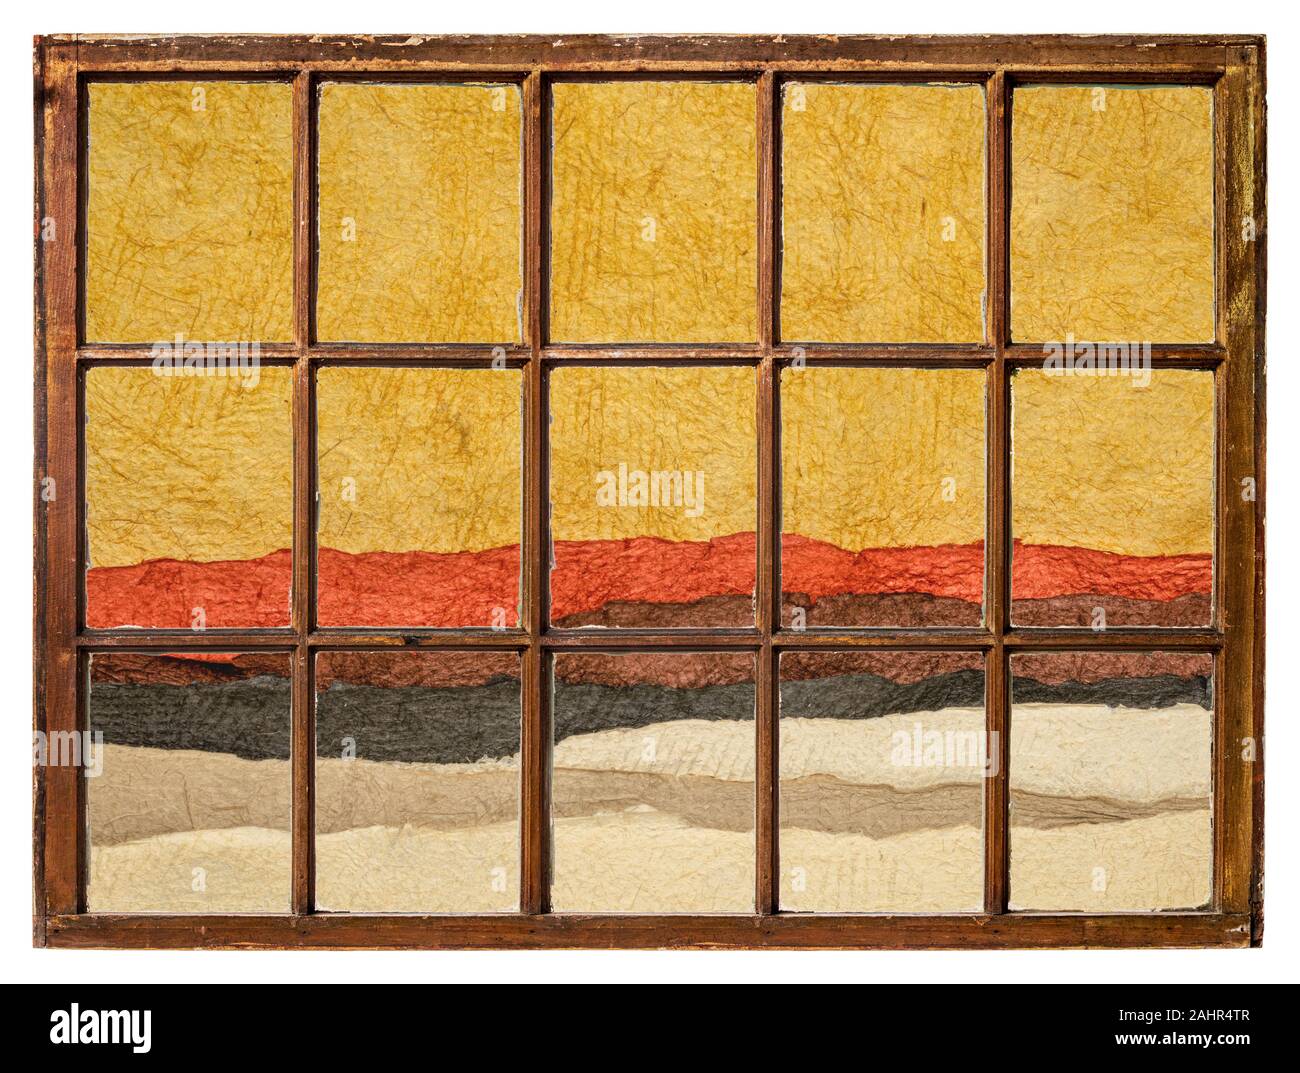 Badlands désertiques ou un paysage vu de la fenêtre à guillotine d'époque, résumé créé avec des feuilles de papier artisanal mexicain coloré texturé Banque D'Images